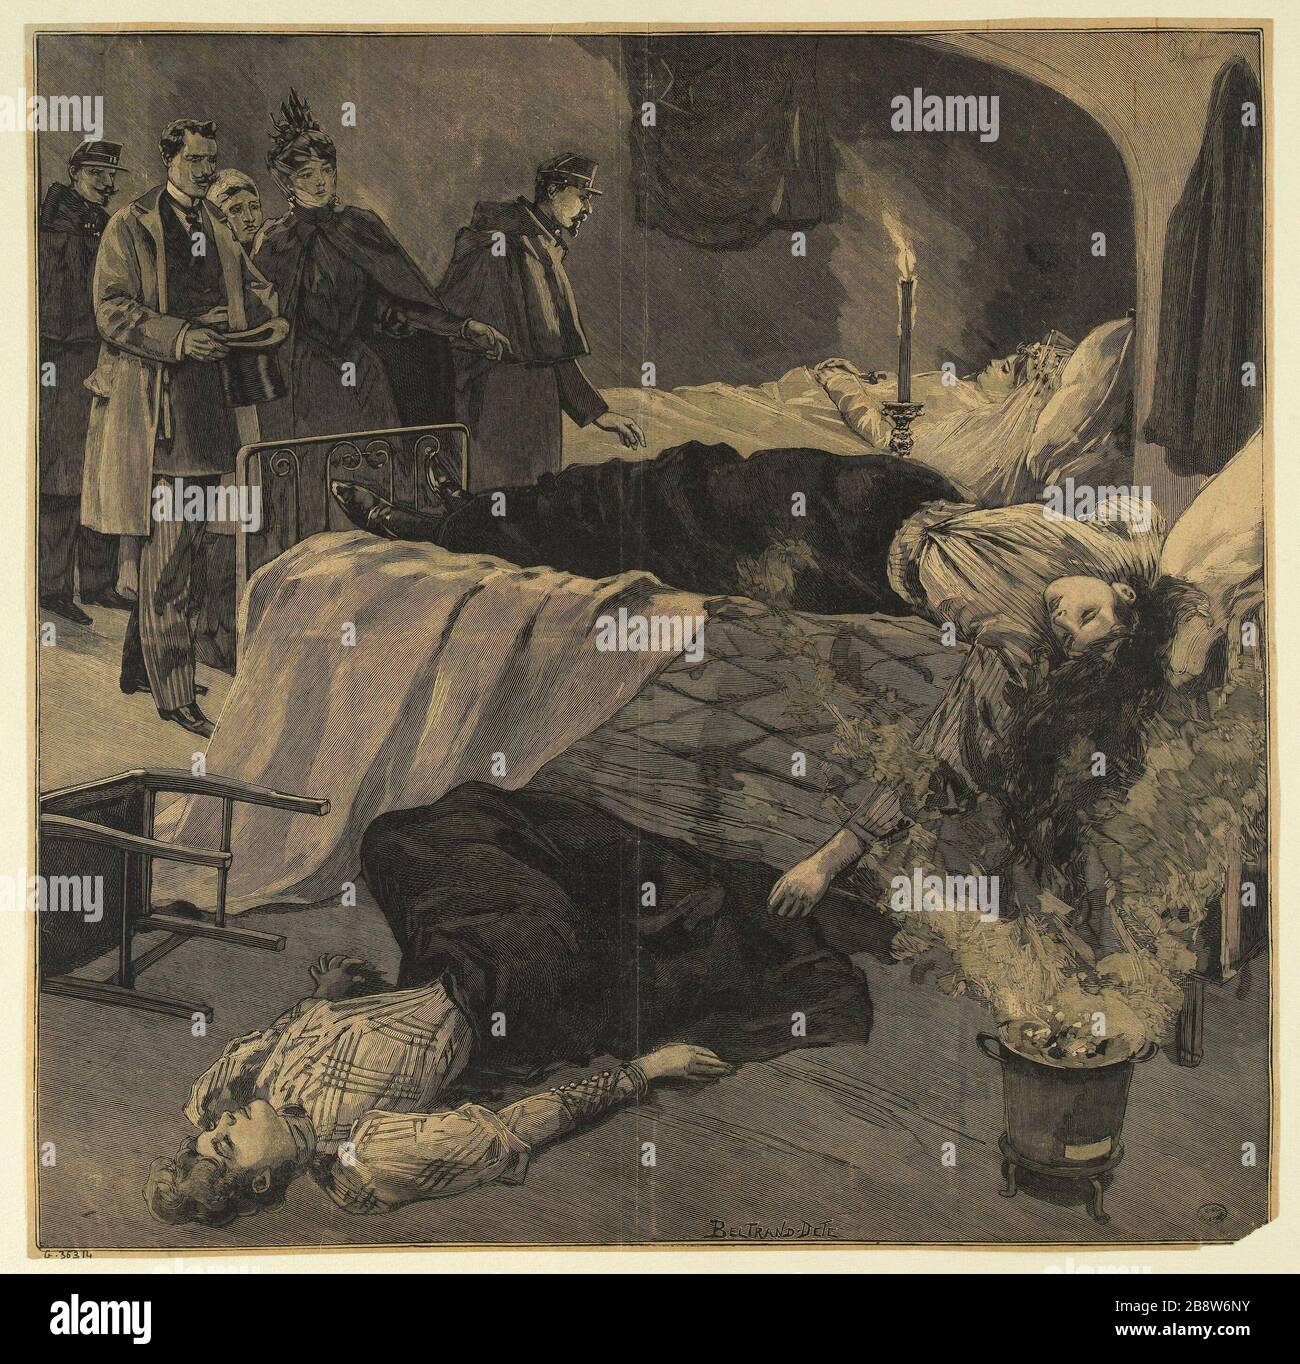 MORDE Beltrand-Dete. "Assassinats". Impression photomécanique, d'après un bois gravé. Paris, musée Carnavalet. Stockfoto